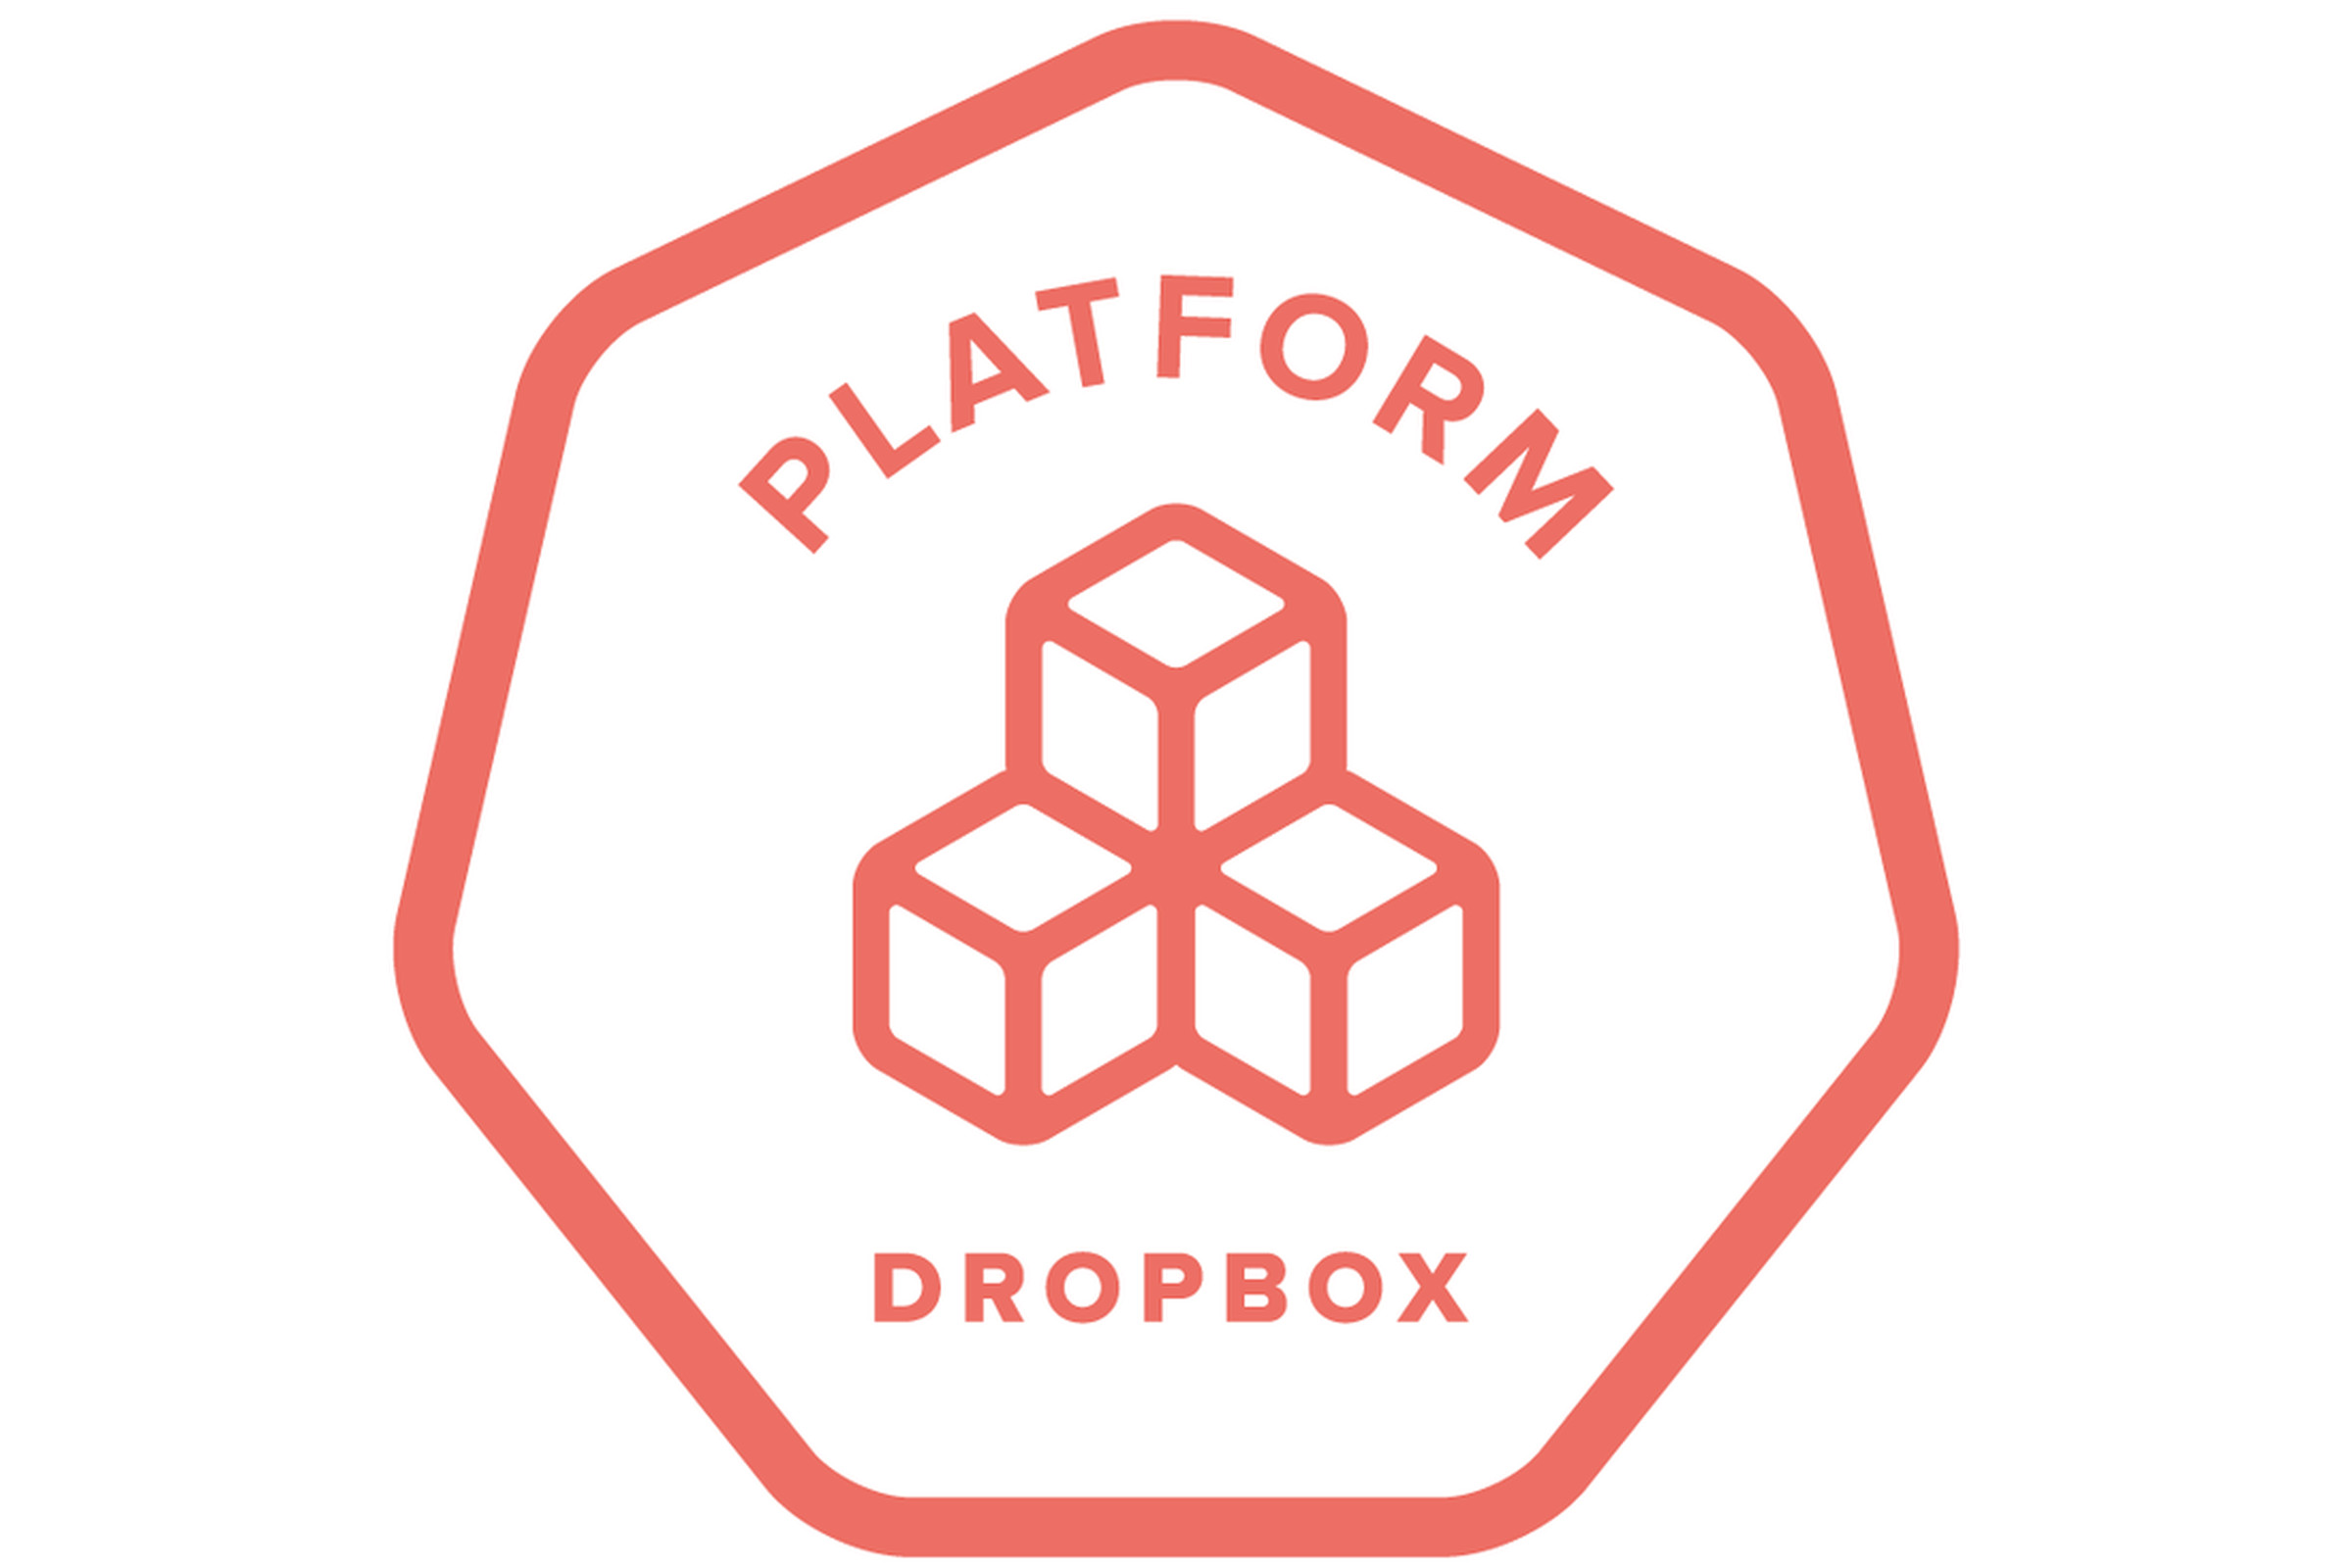 Dropbox platform